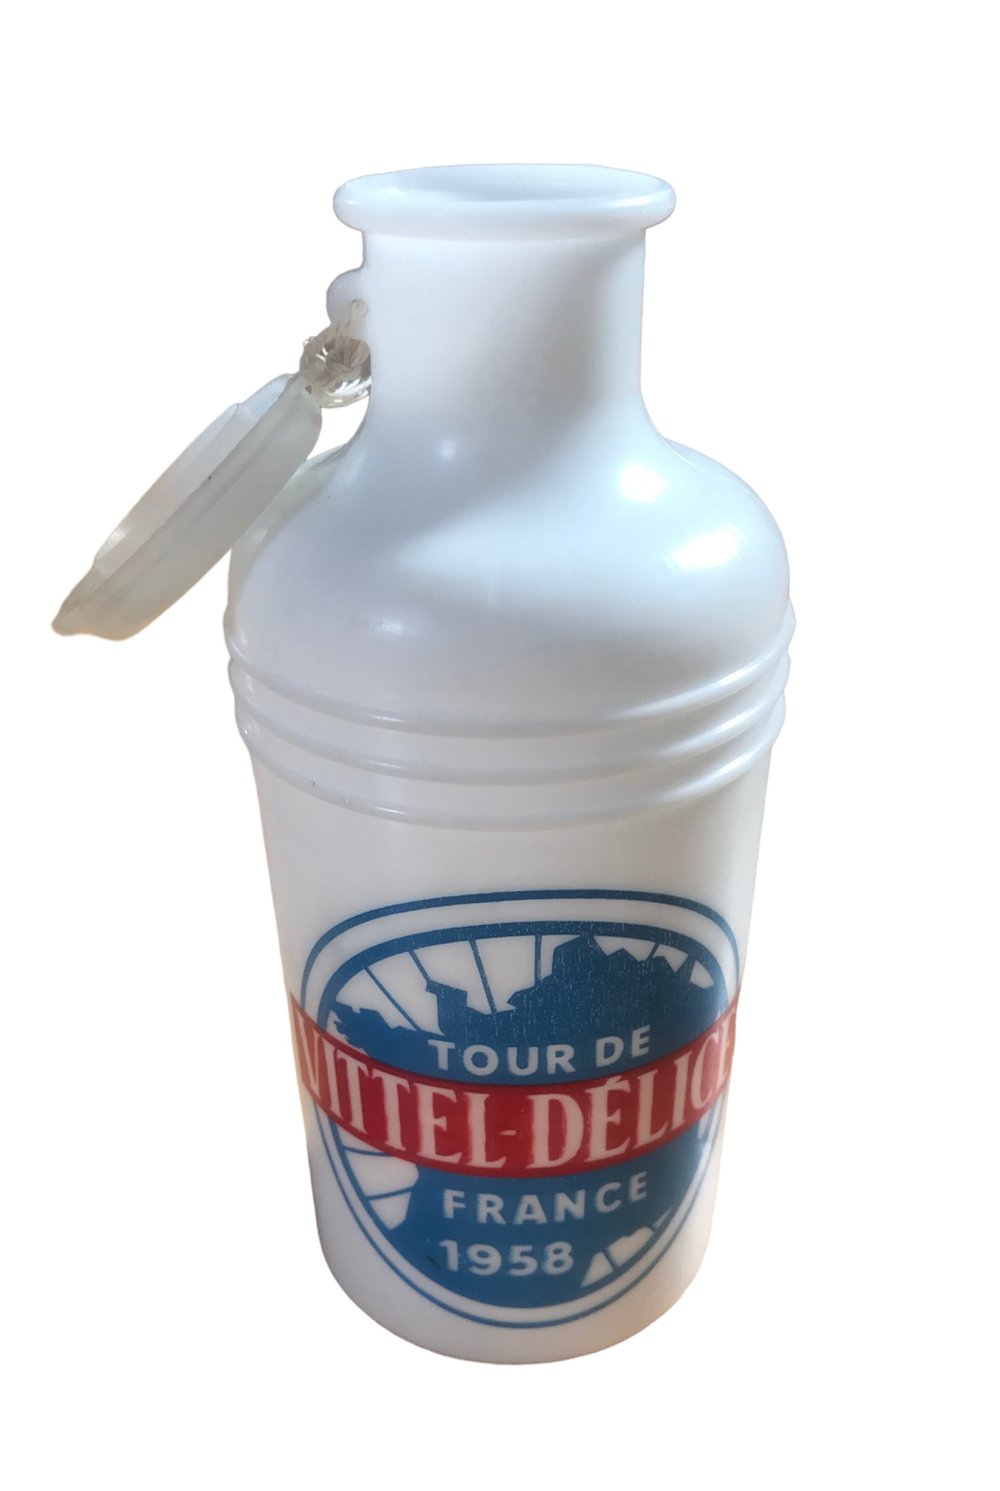 1958 - Tour de France - La Vitelloise 